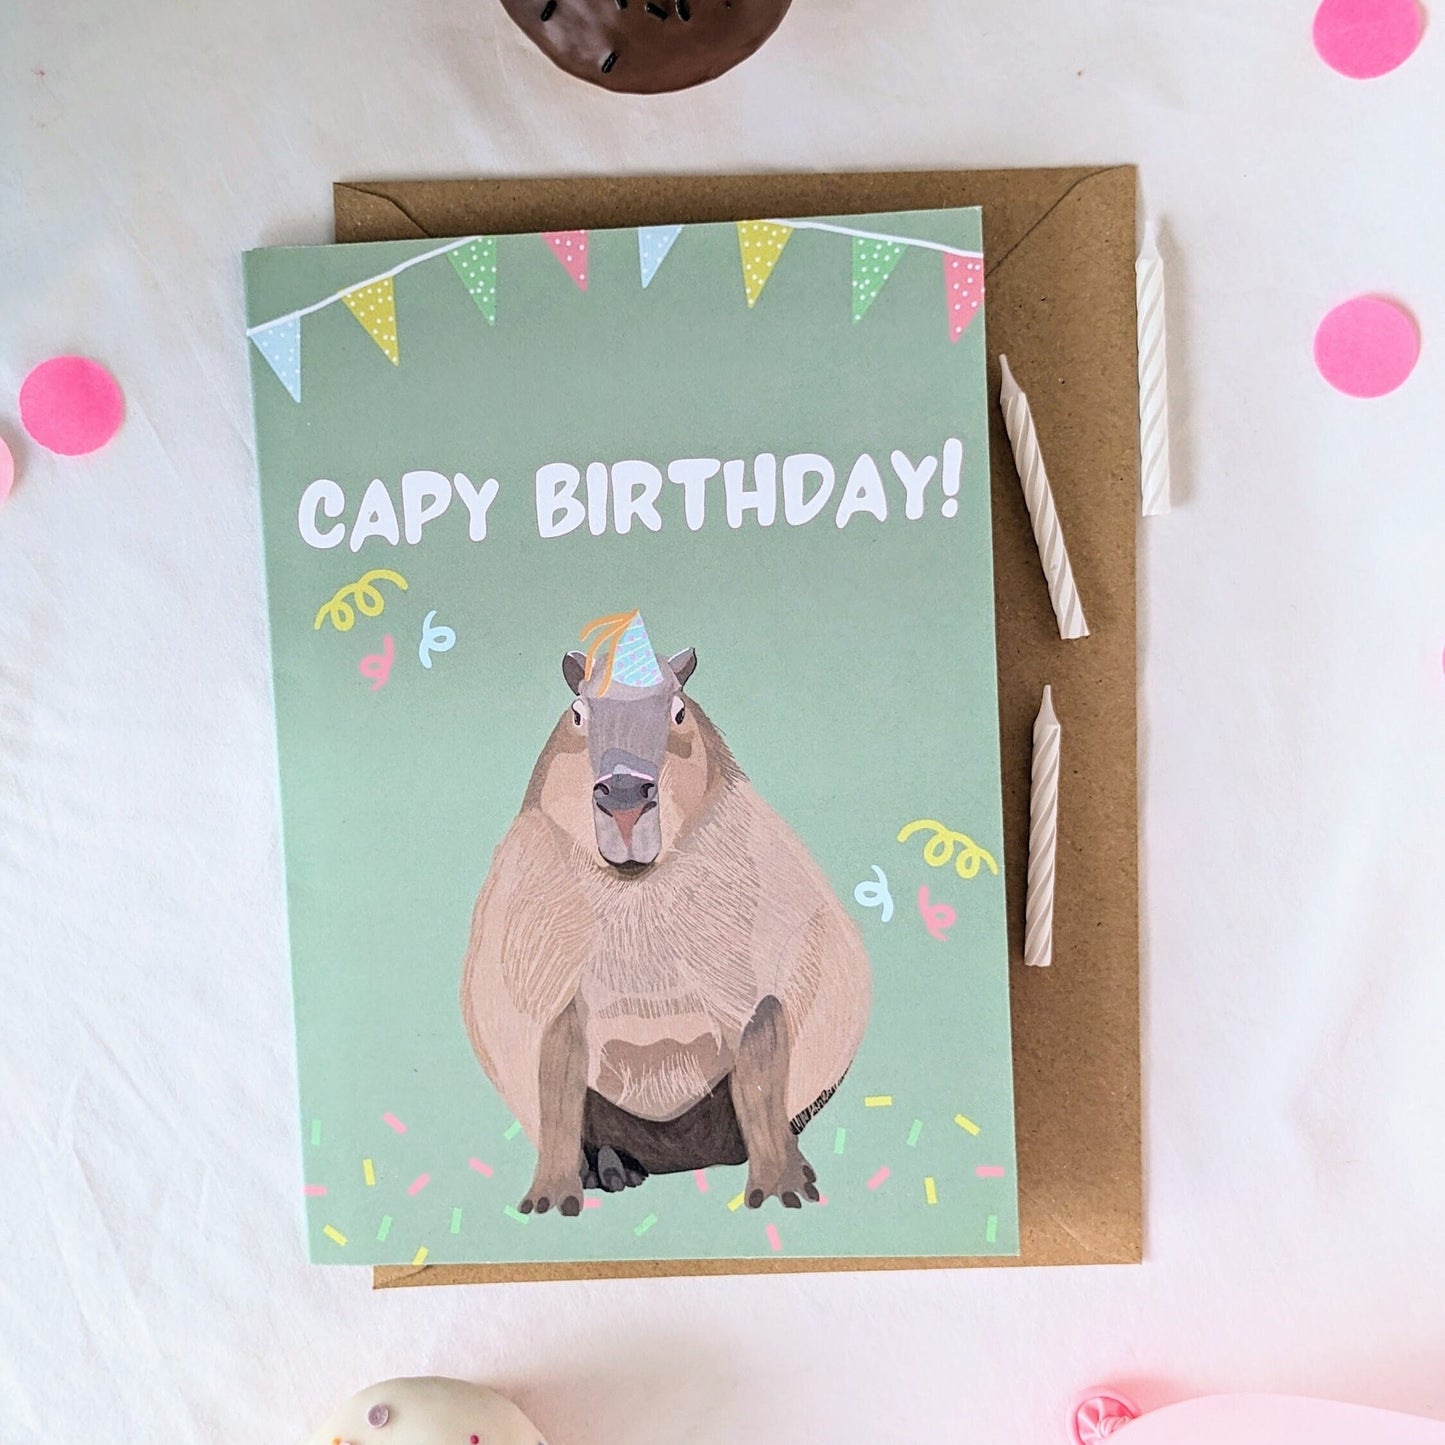 Capybara Birthday Card/ Capy Birthday!